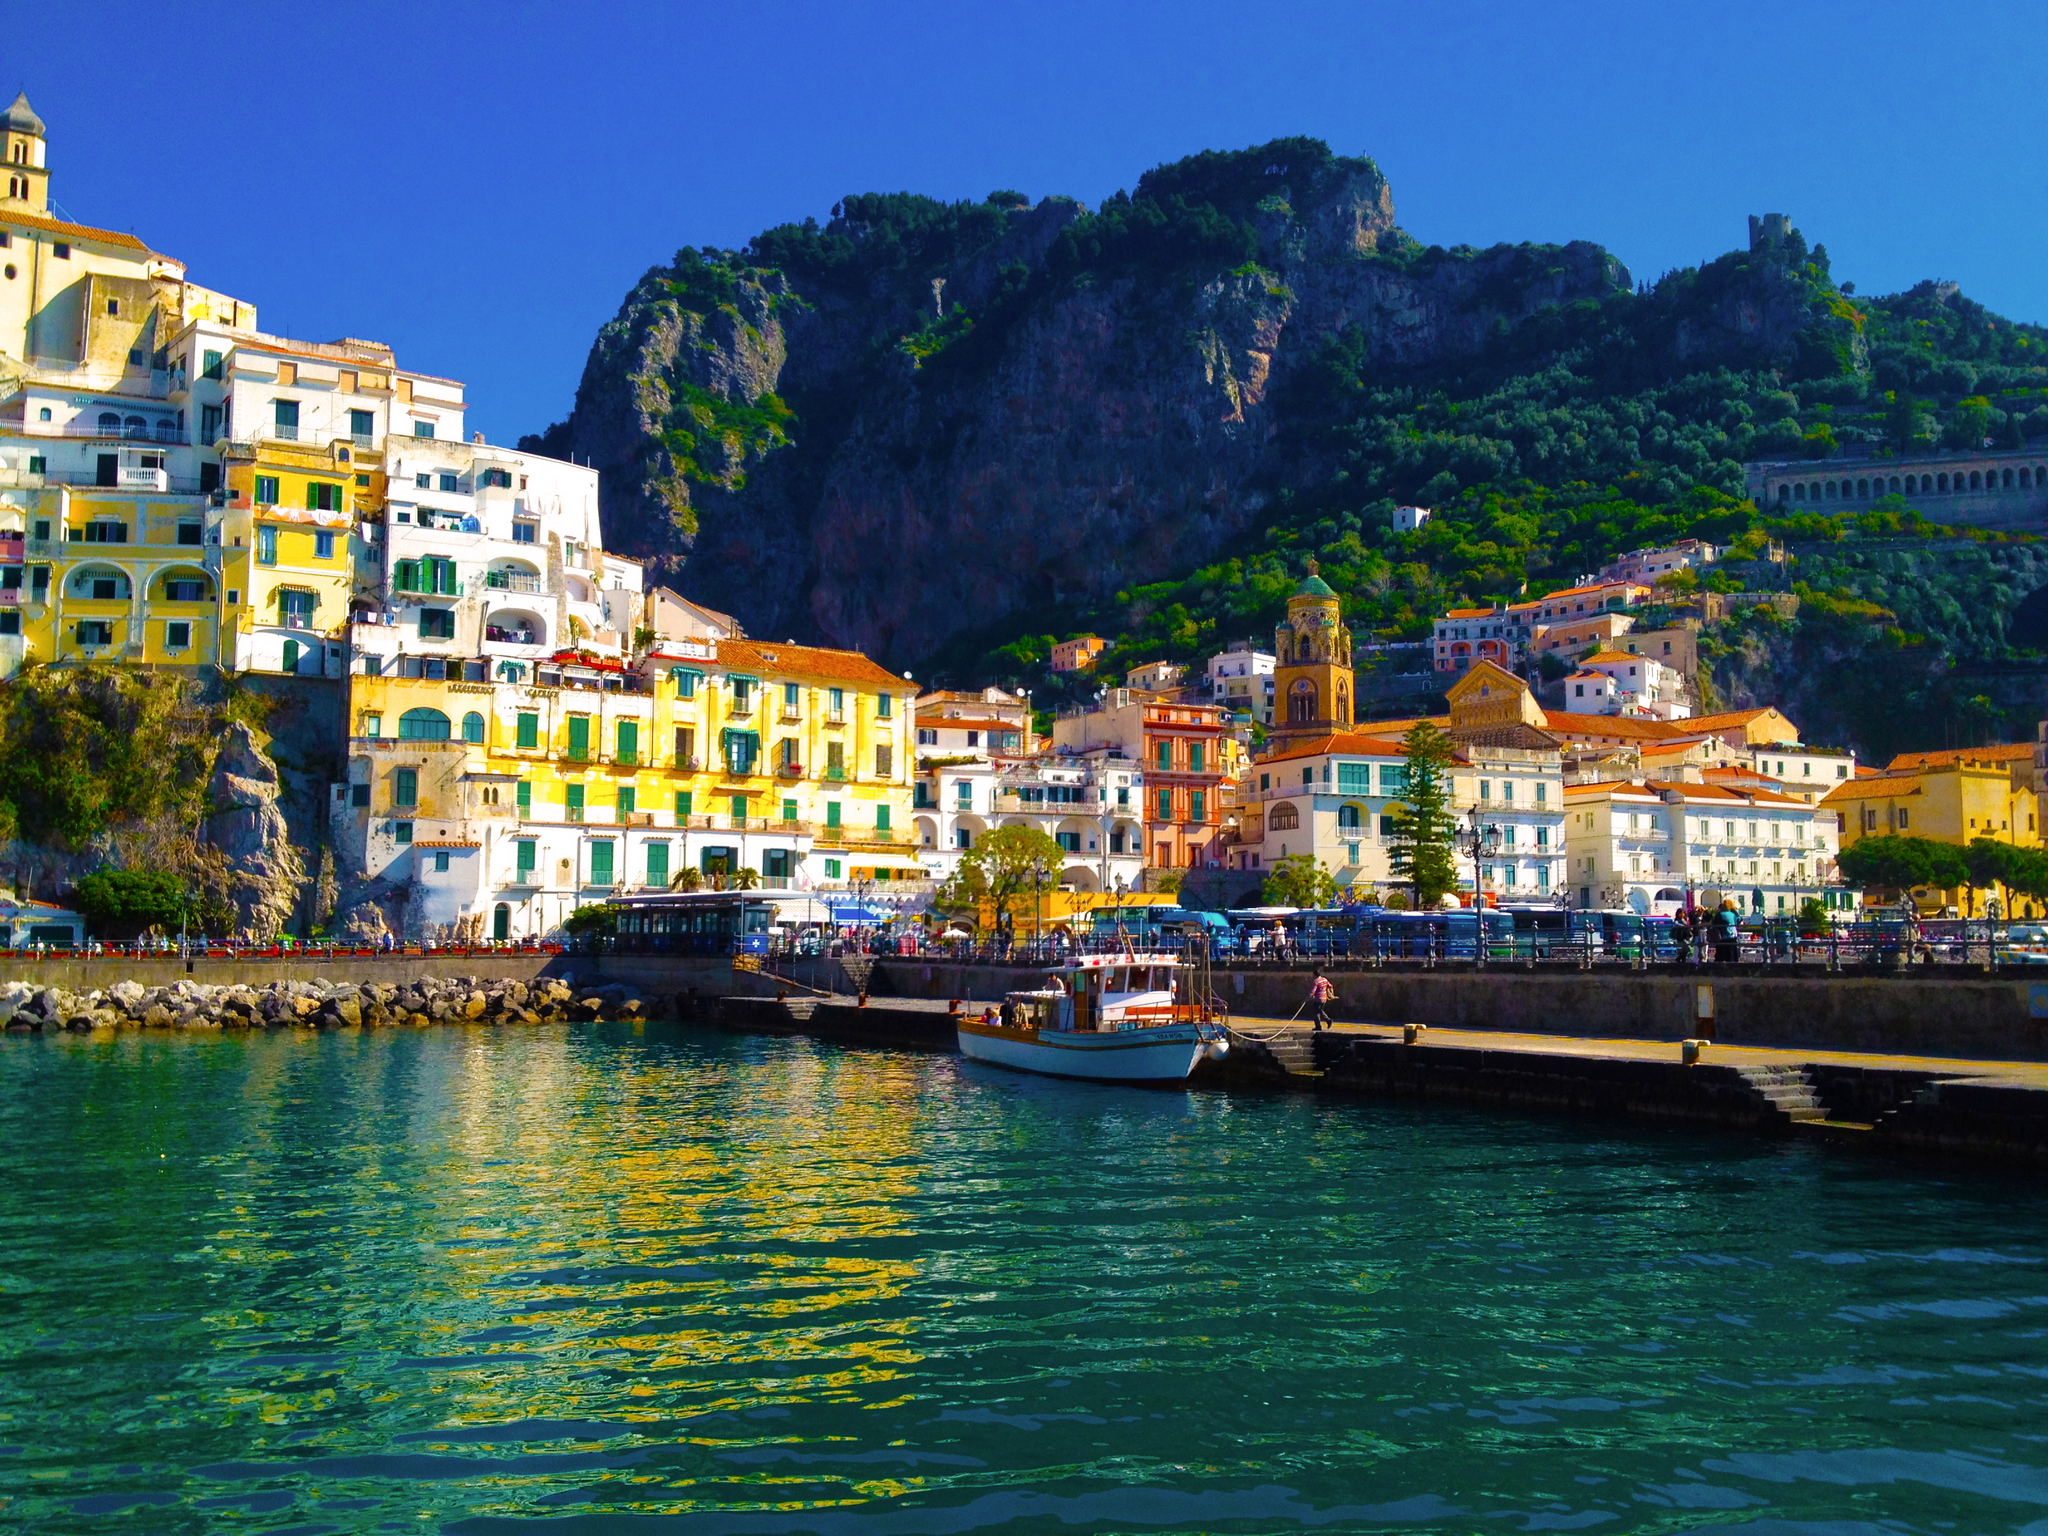 Amalfi HD Wallpaper Background Image